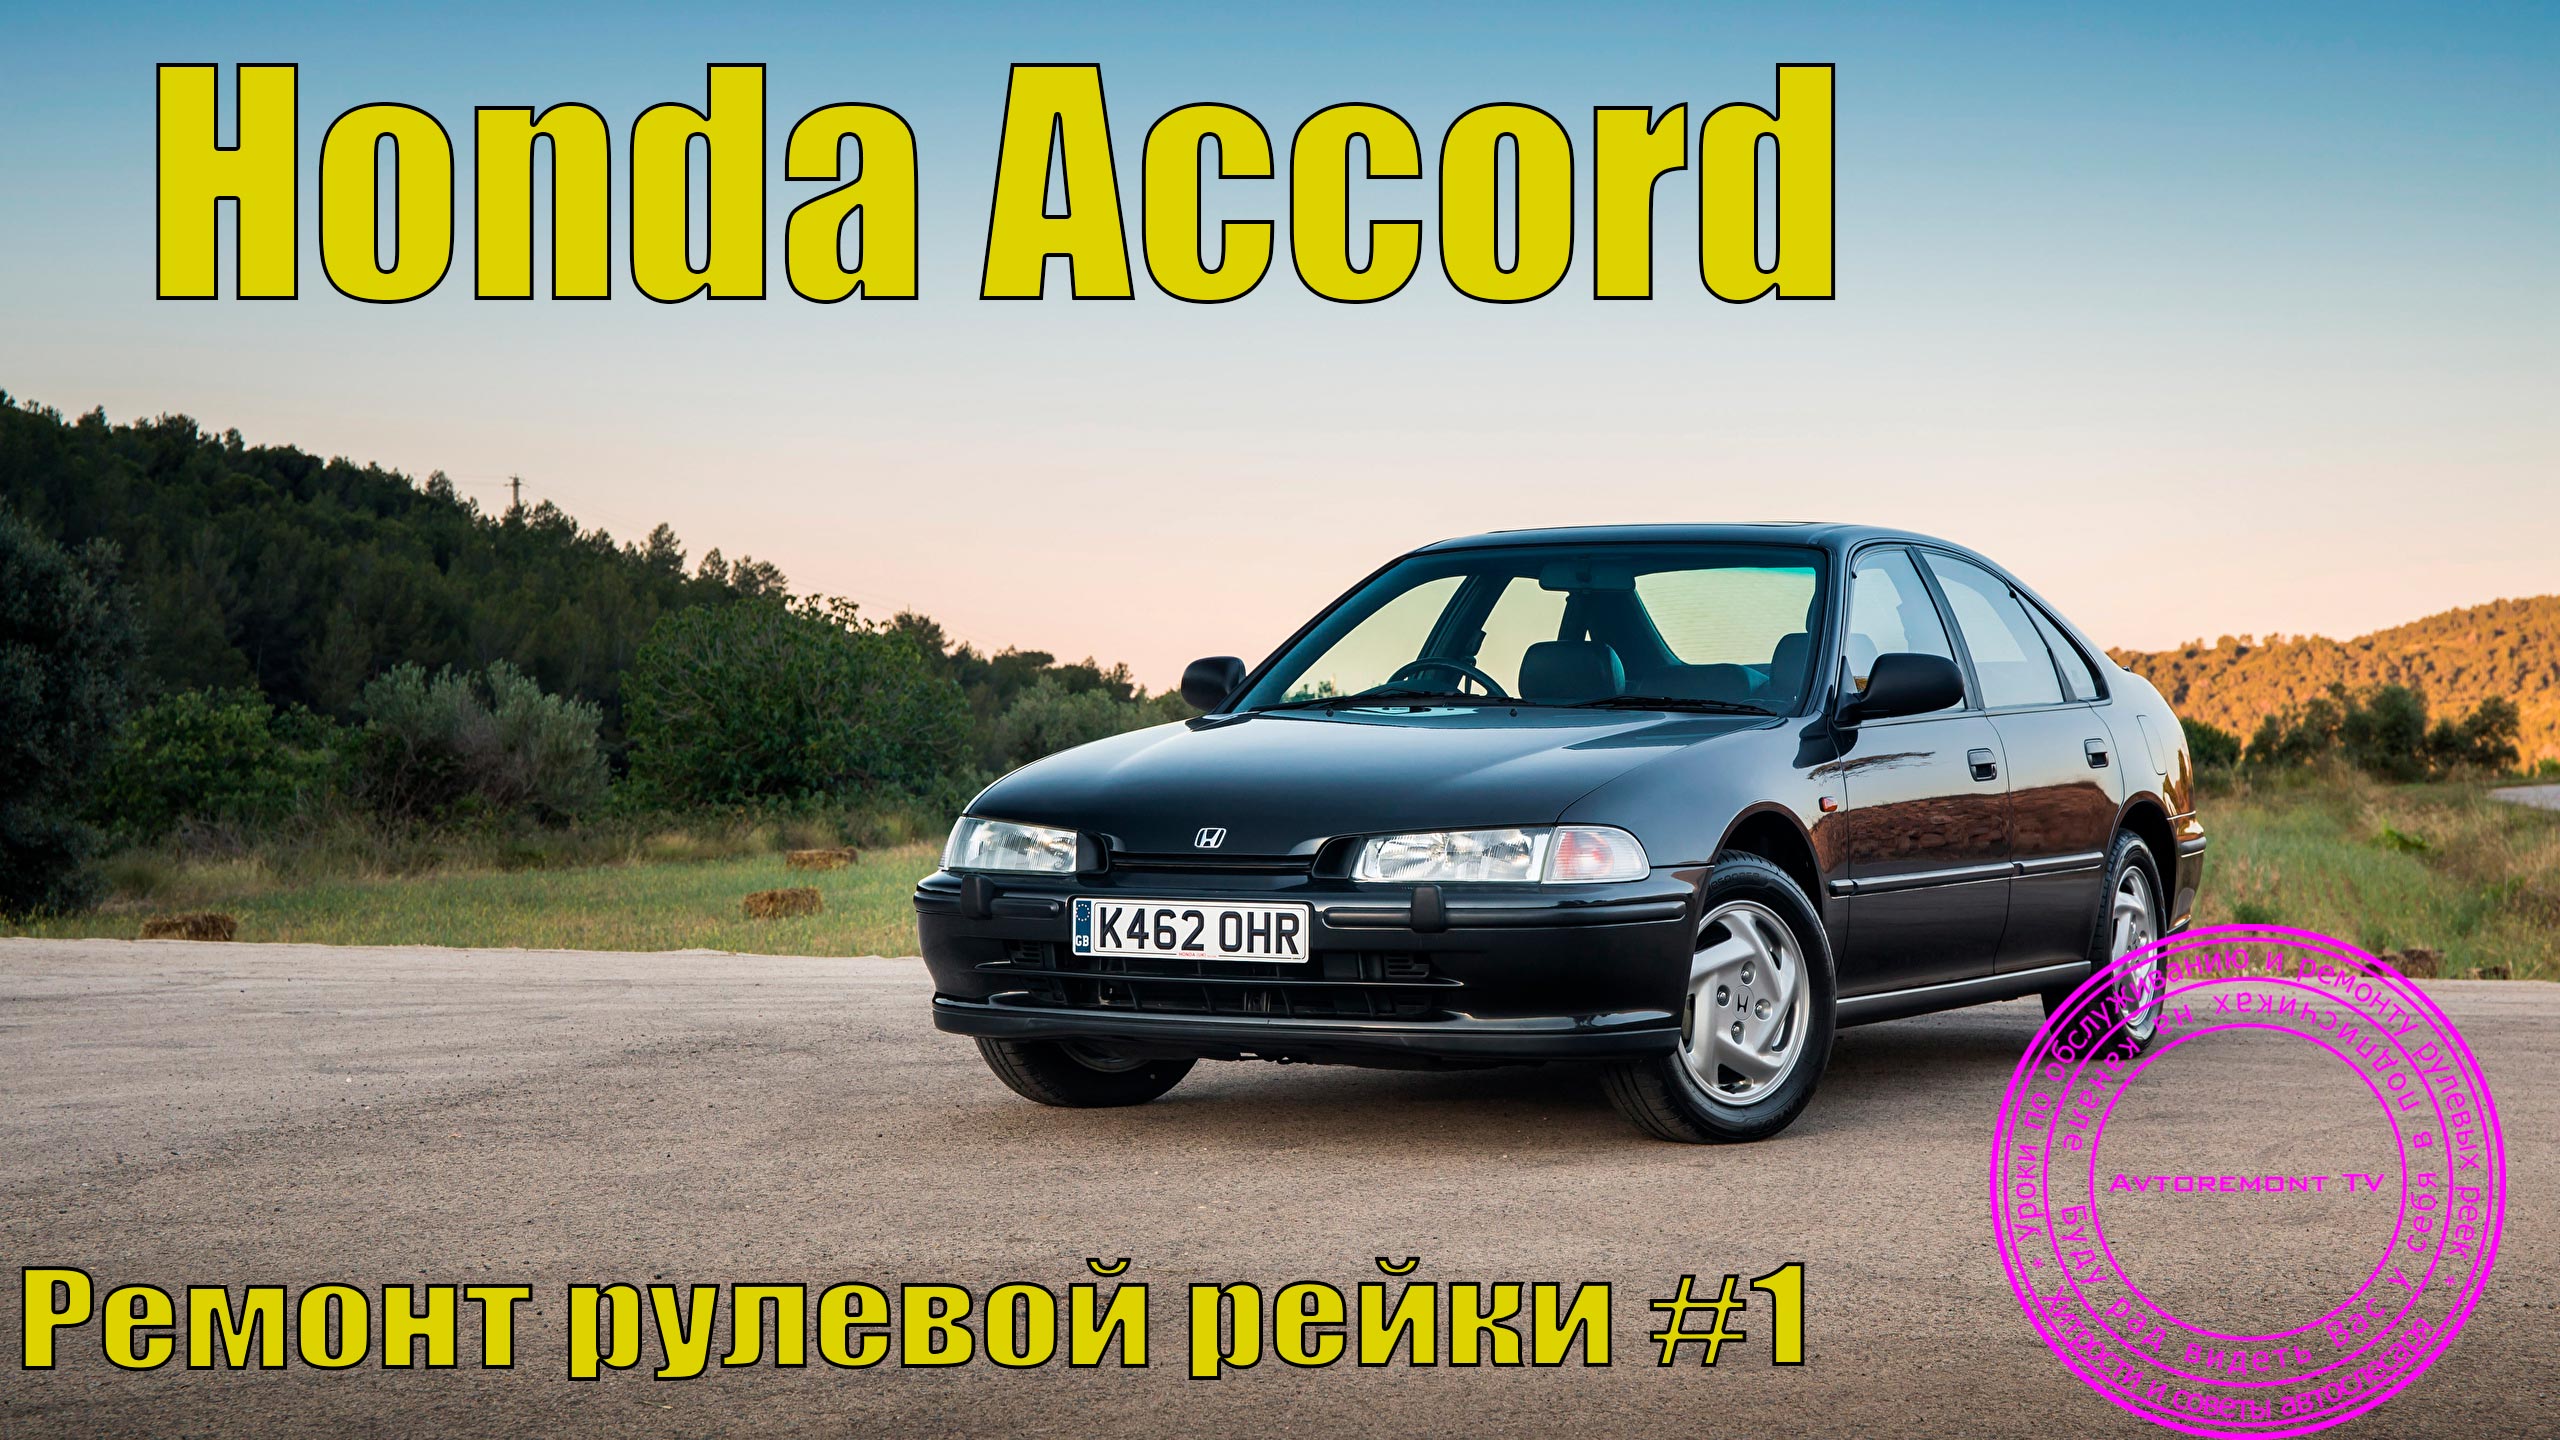 Рулевые рейки Honda Accord. Ремонт и продажа | Pst Car Service